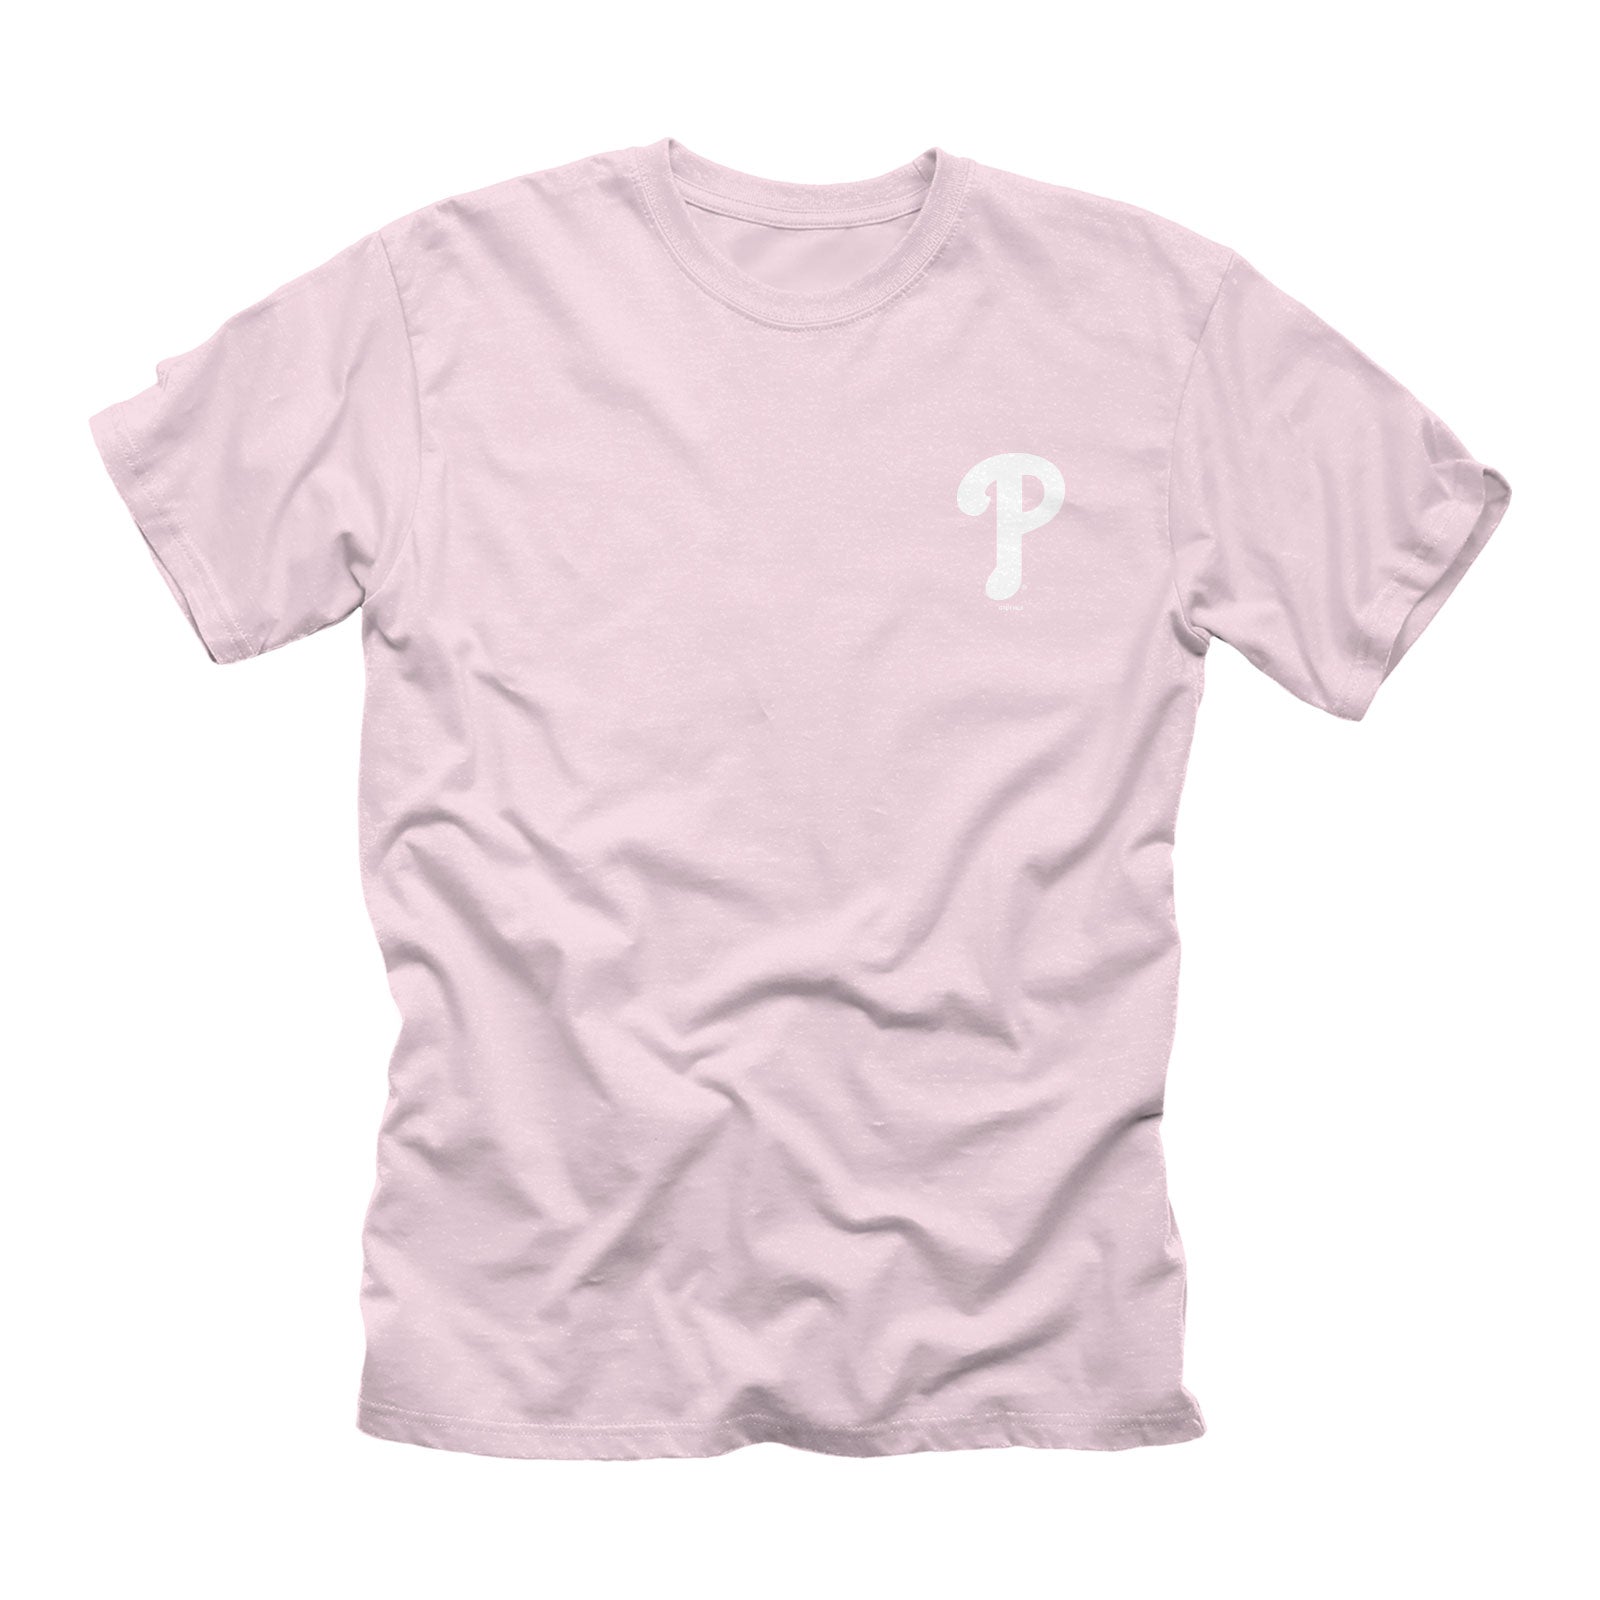 pink phillies t shirt